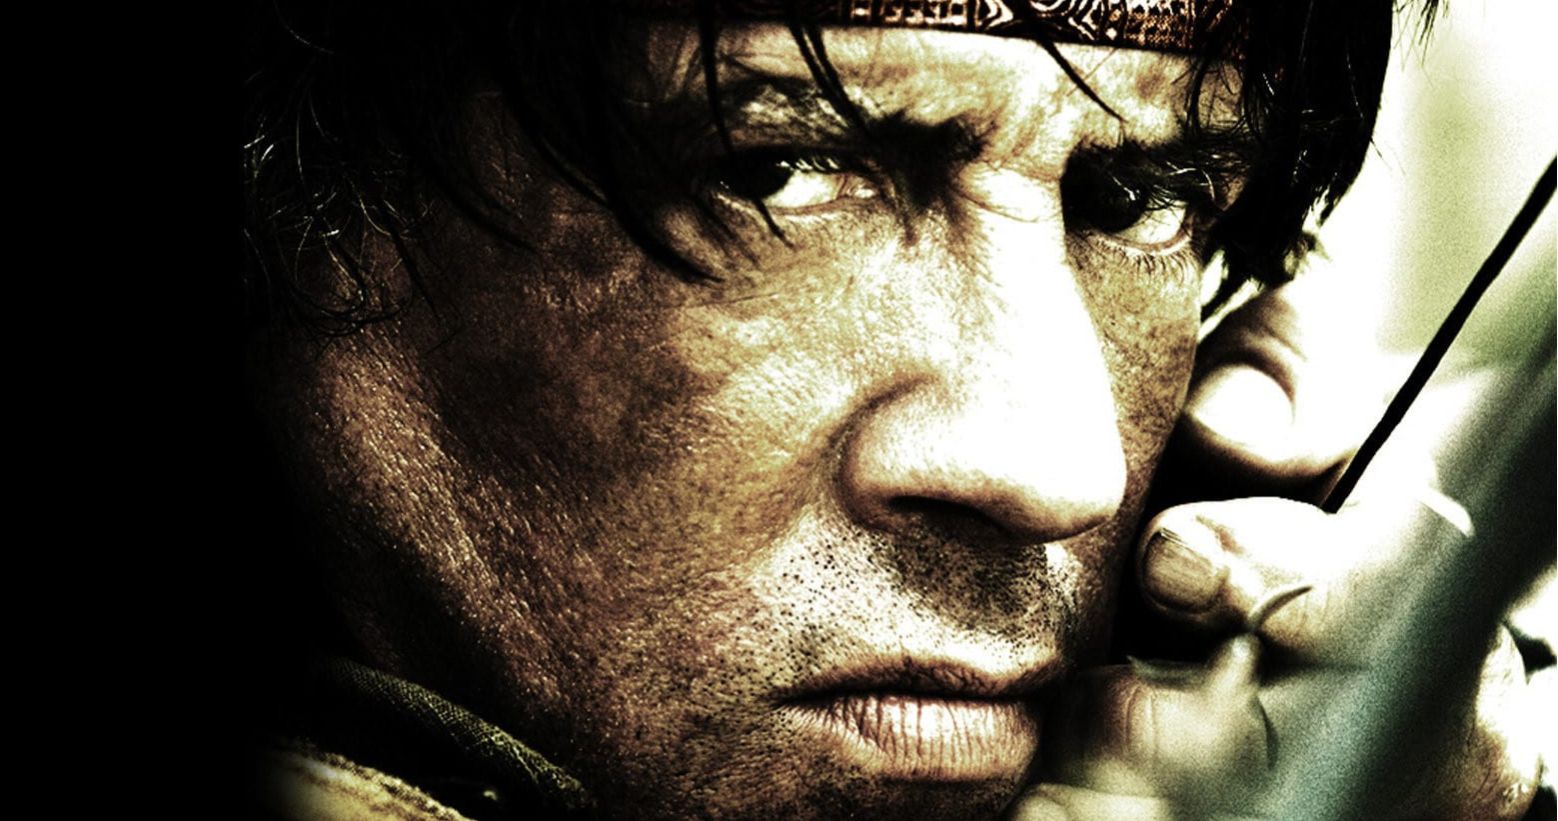 Rambo Is Getting a 4K Ultra HD Release Ahead of Last Blood